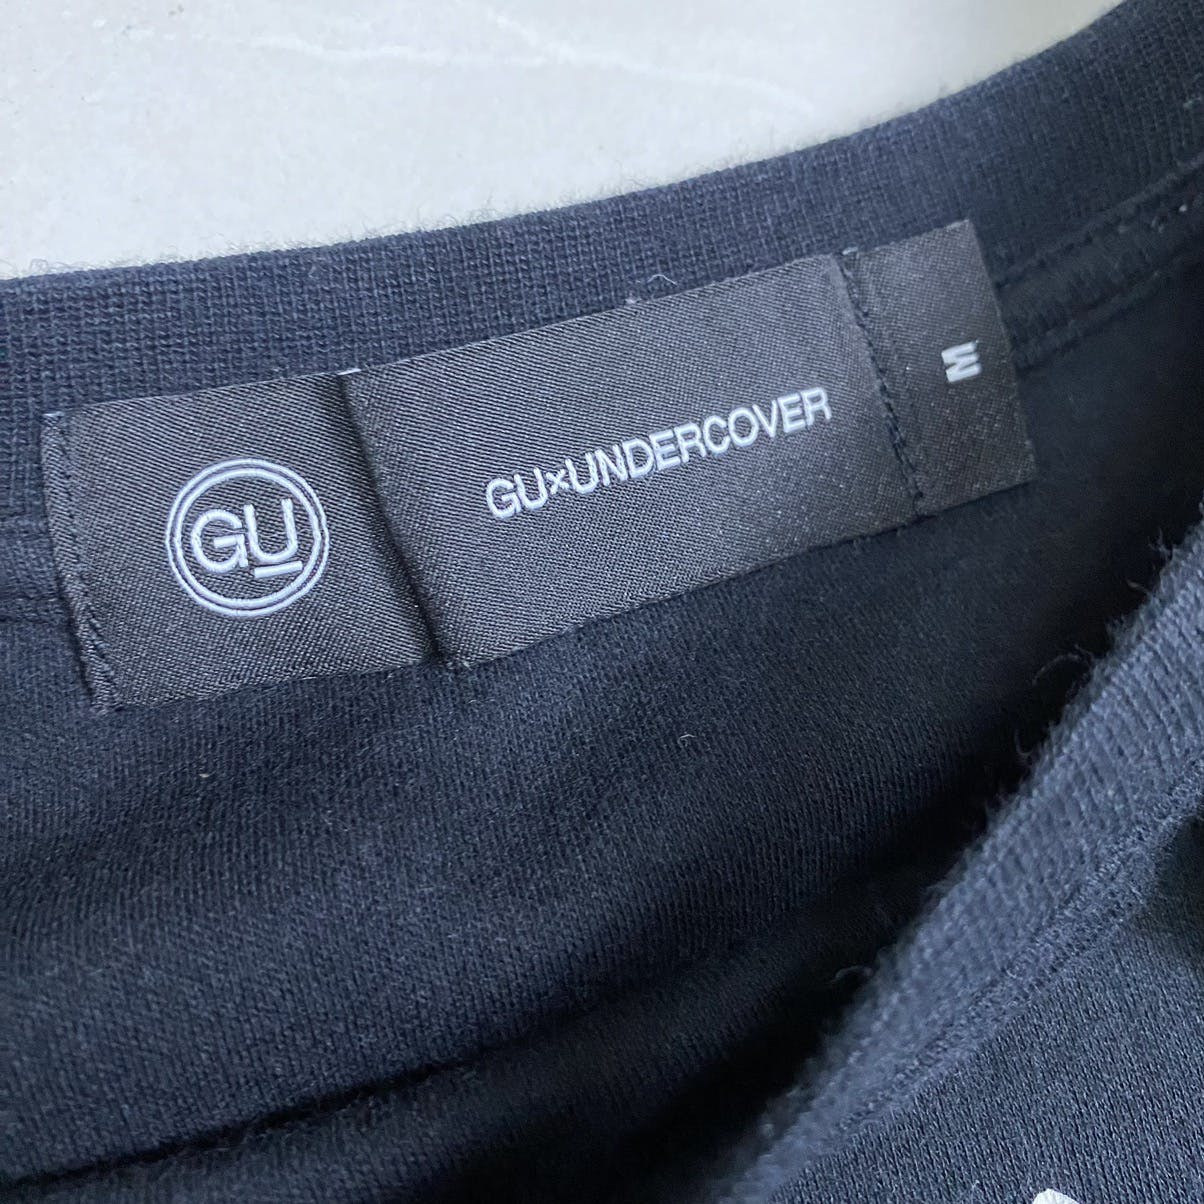 GU X Undercover maxi dress shirt - 11